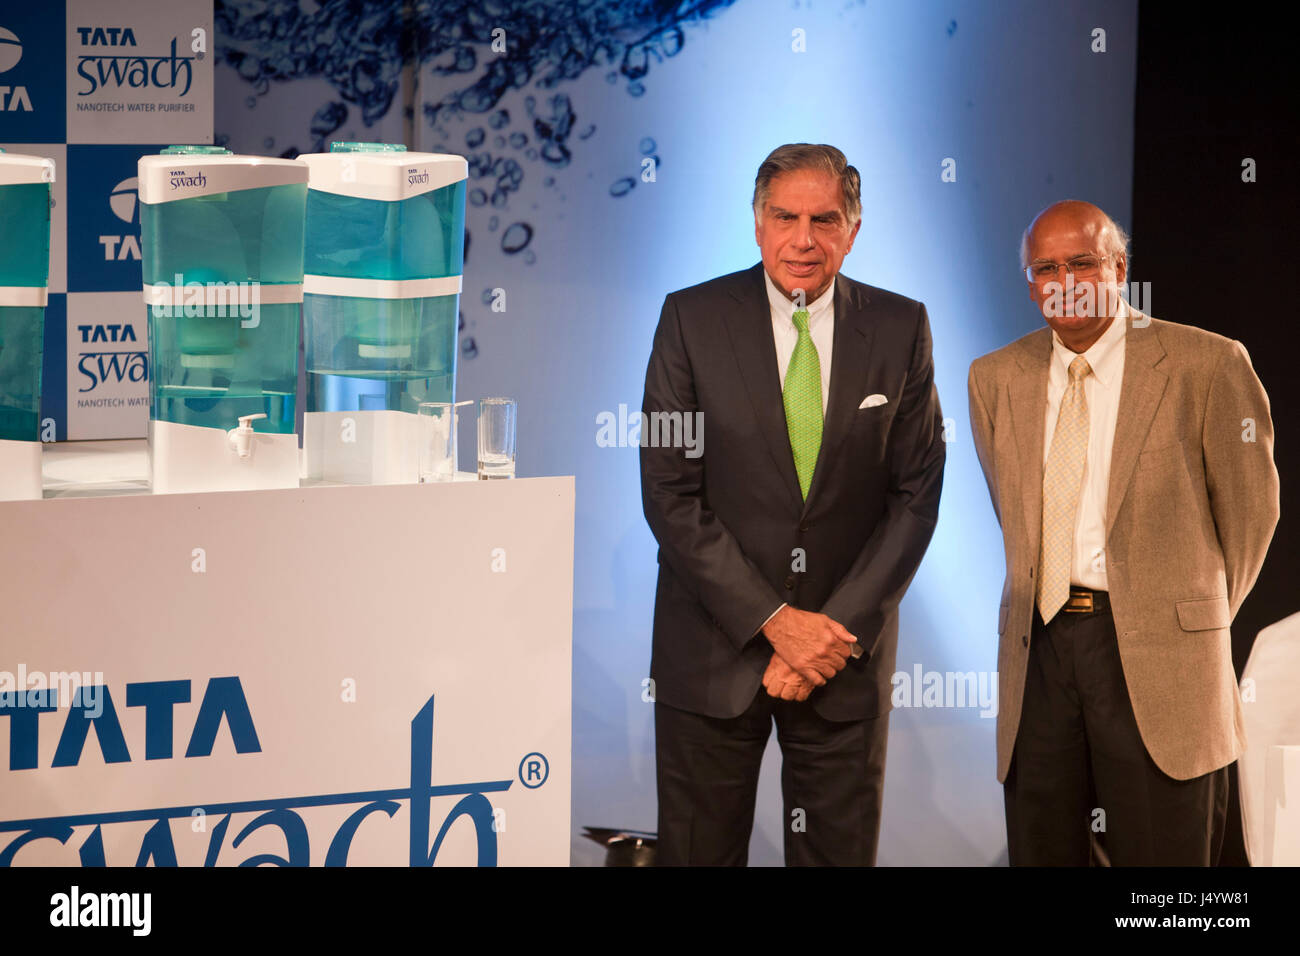 Ratan Tata et s ramadorai pendant le lancement purificateur d'eau, Mumbai, Maharashtra, Inde, Asie Banque D'Images